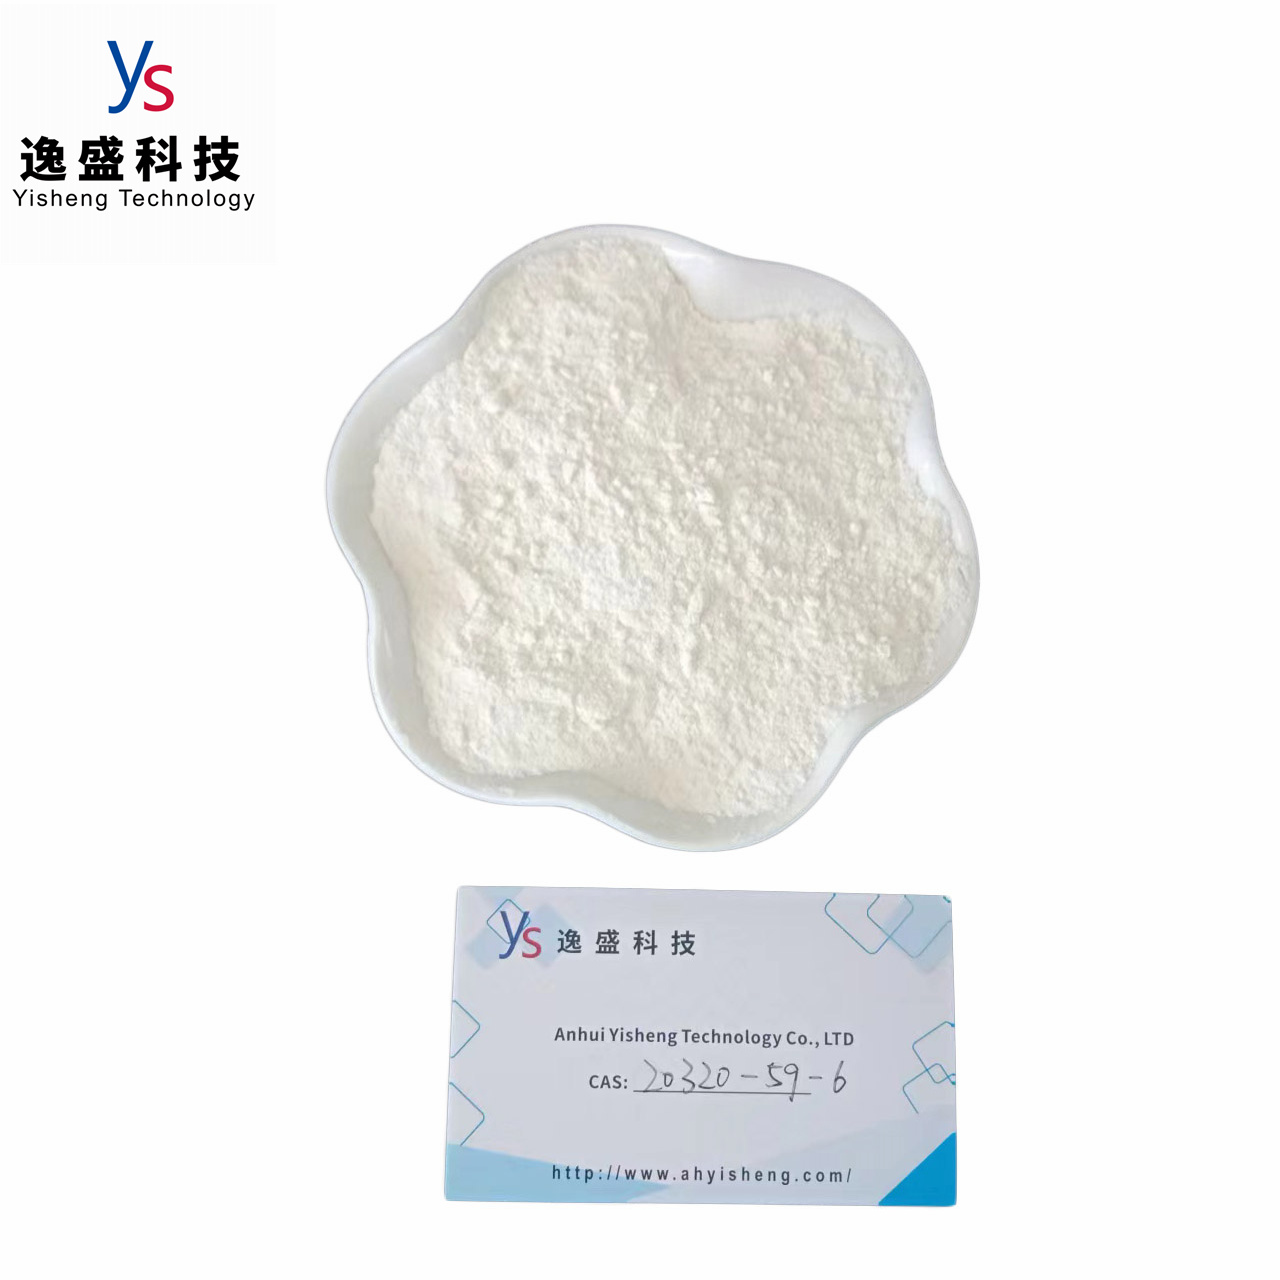 CAS 20320-59-6 Wholesale Pmk powder